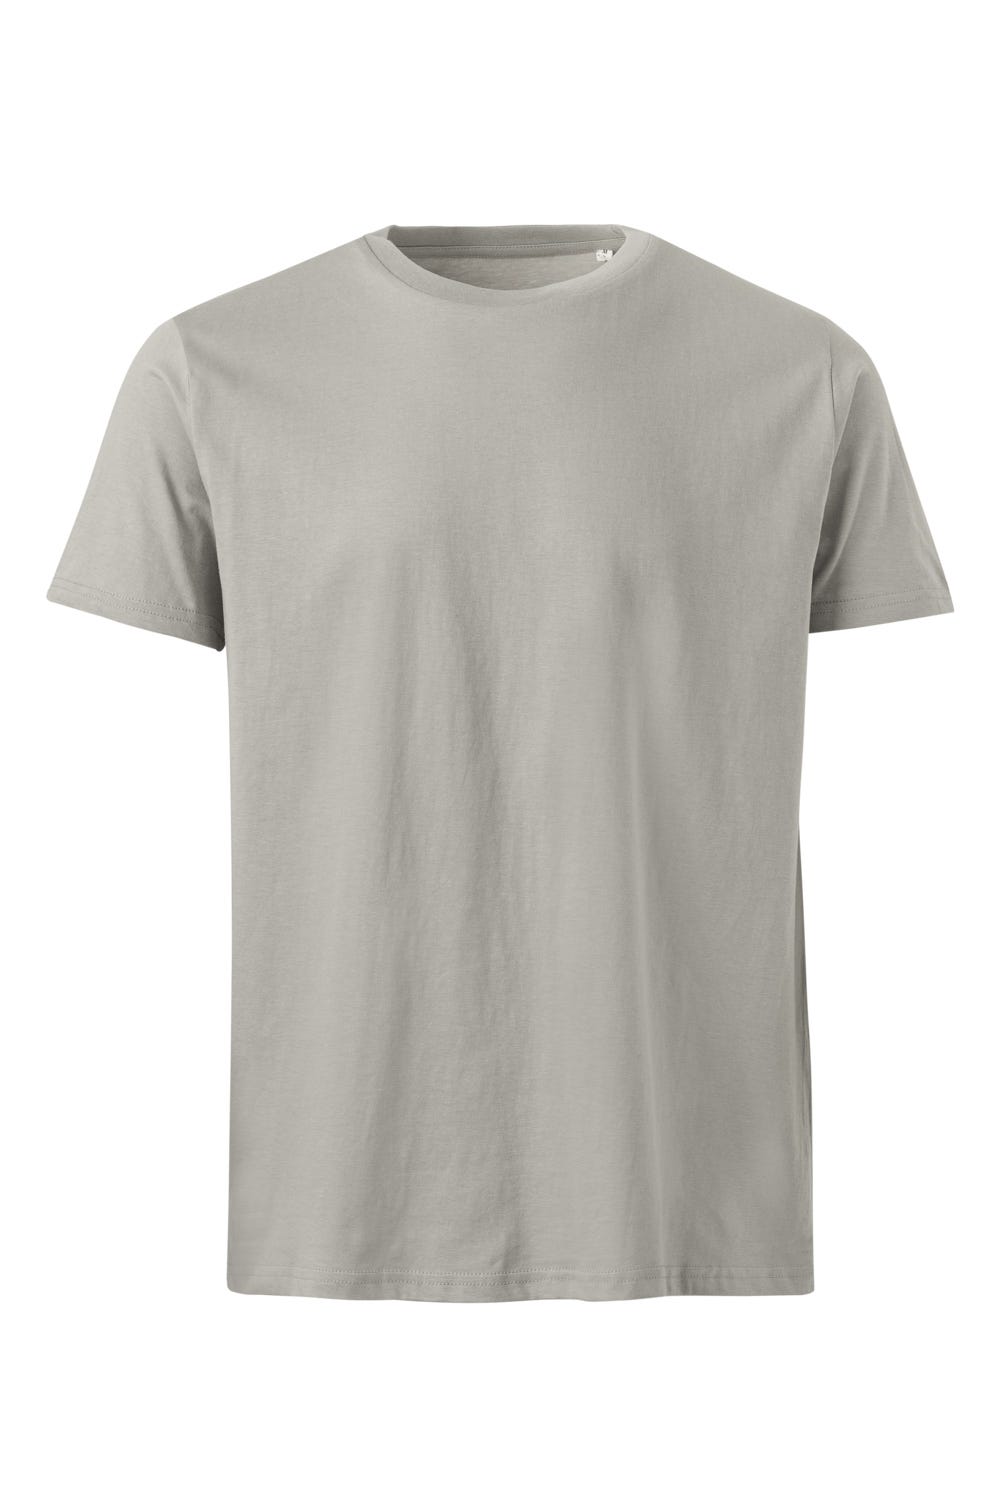 Mukua Tsn160uc Camiseta Manga Corta Natura Fossil Grey